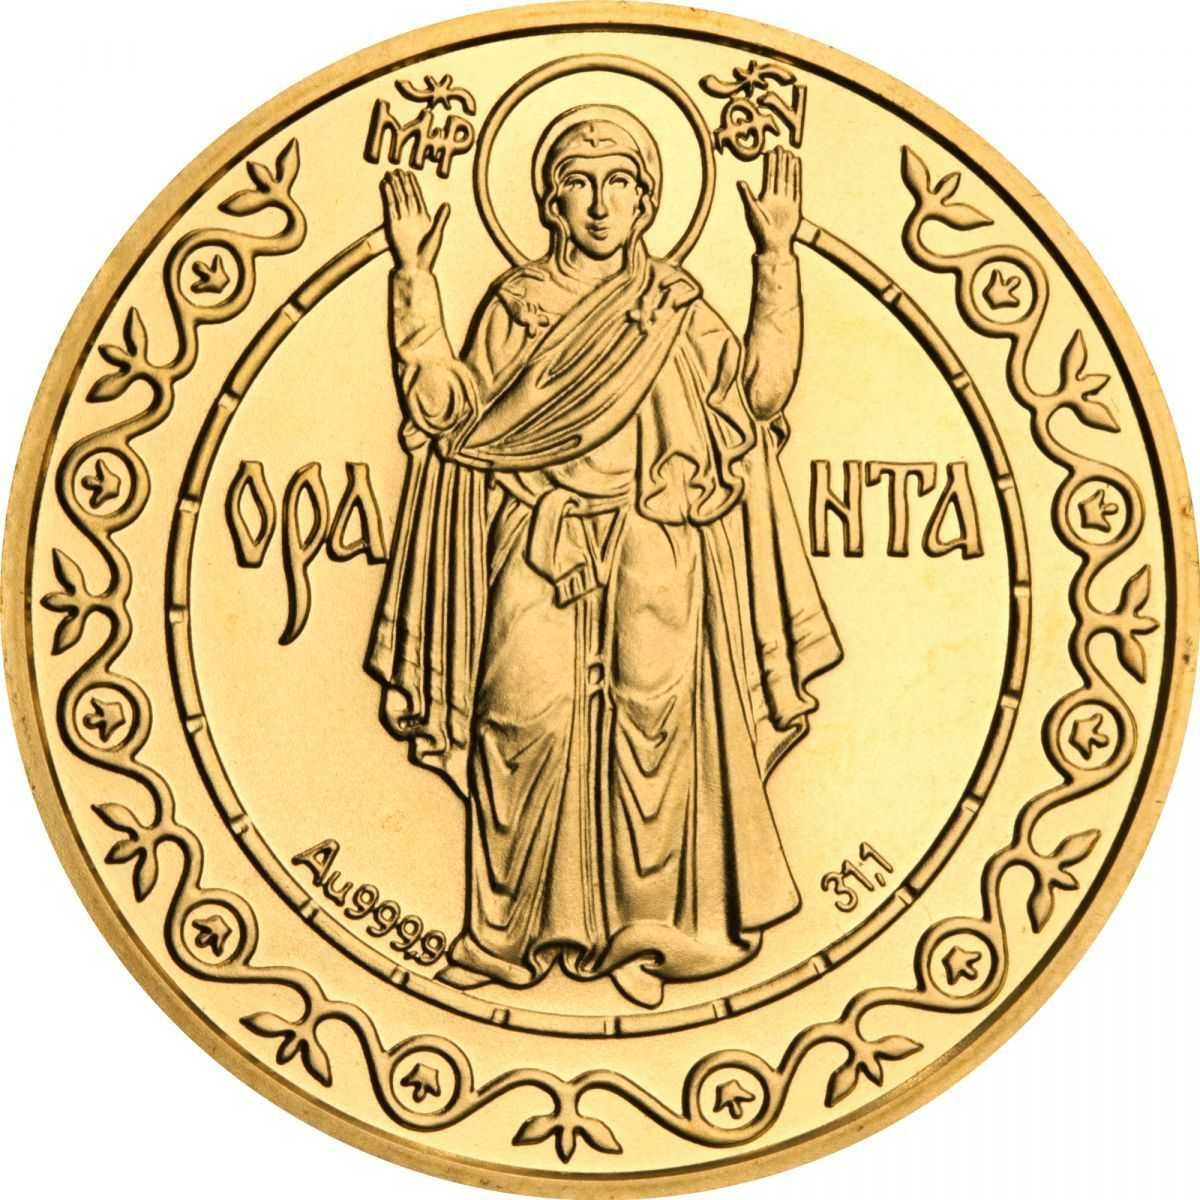 Обмен монет Украины и мира (золото, серебро, нейзильбер).